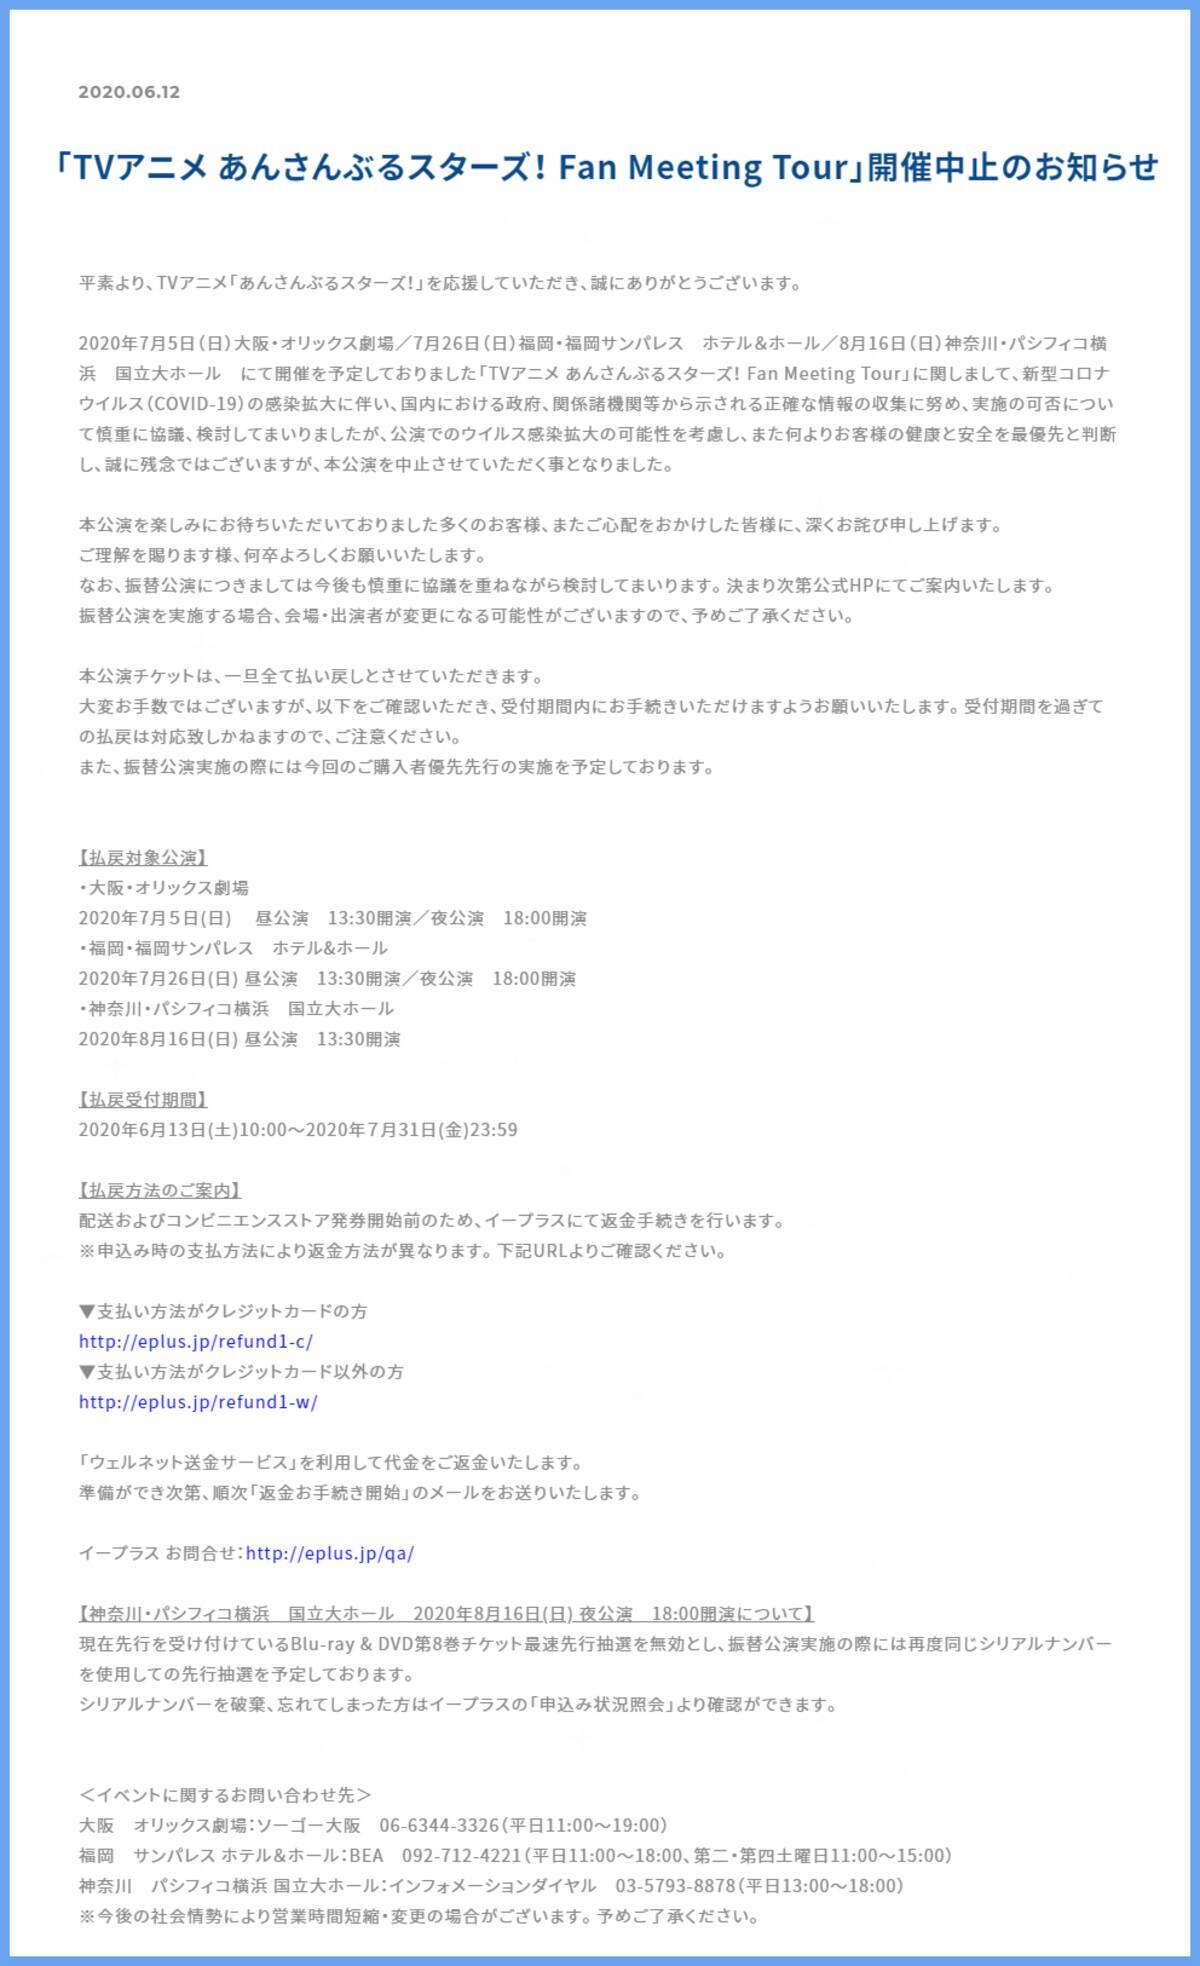 Tvアニメ あんスタ ファンミ大阪 福岡 横浜全公演開催中止決定 年6月12日 エキサイトニュース